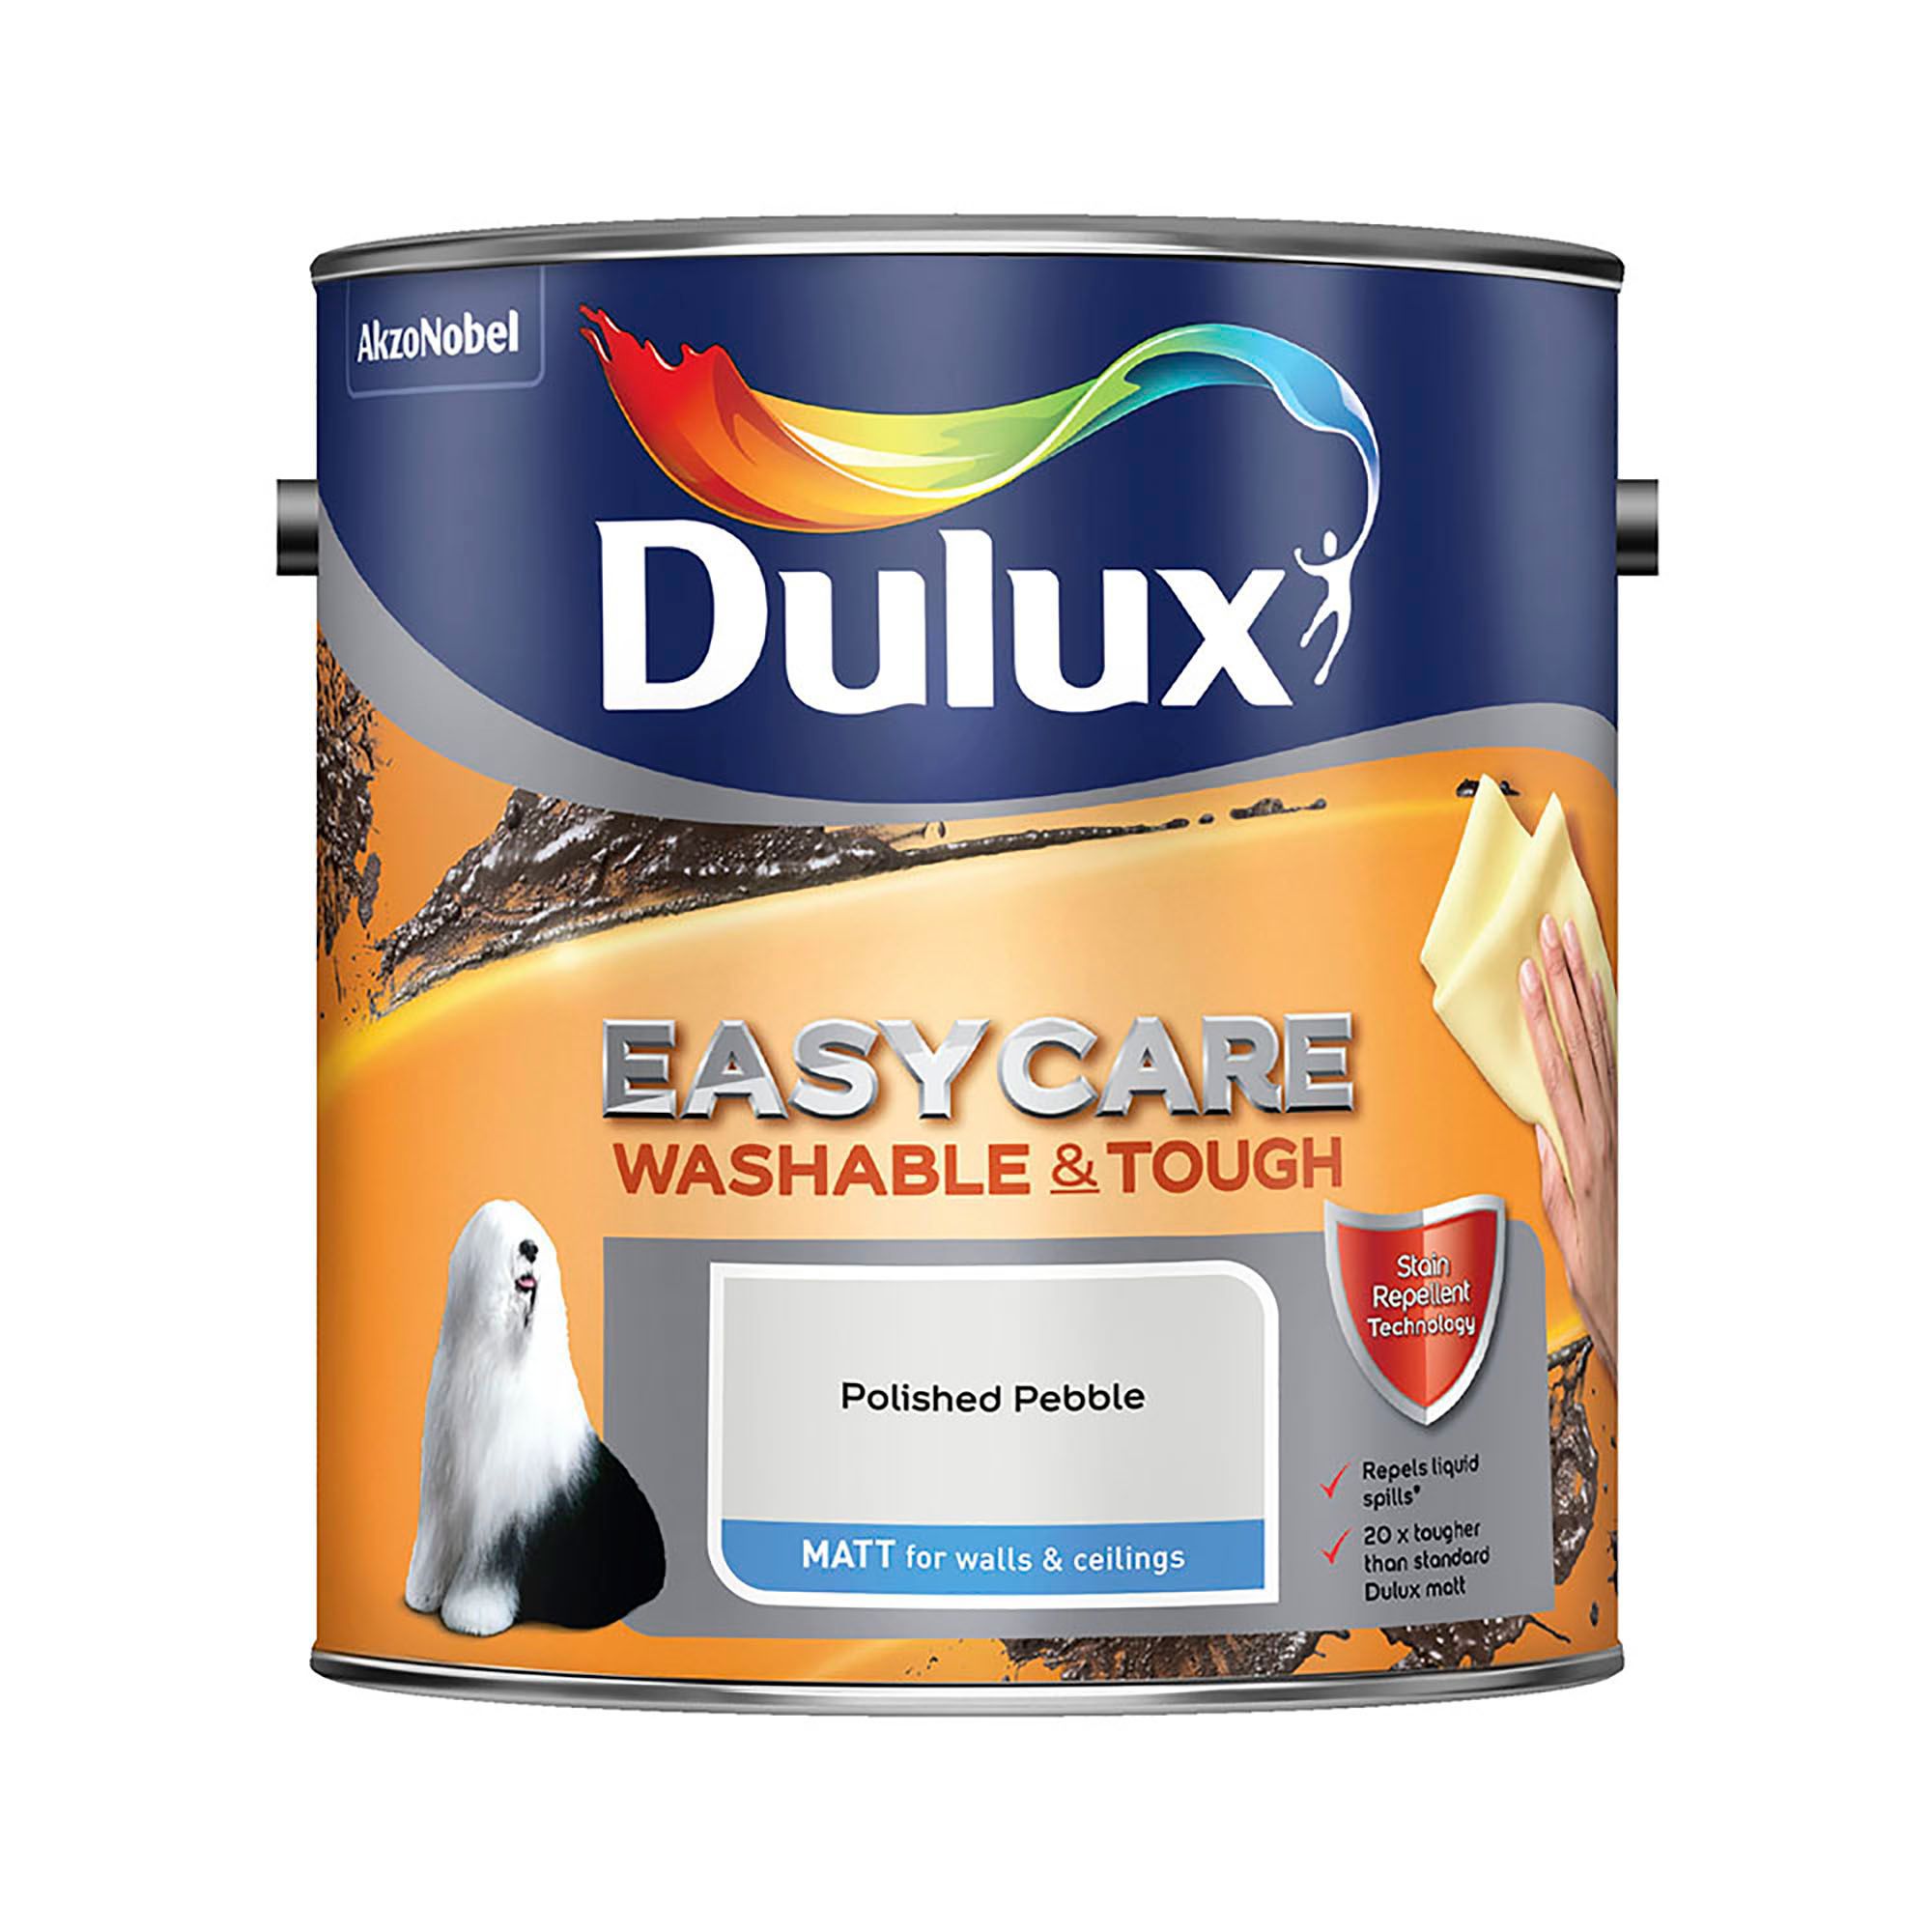 Dulux Easycare Polished pebble Matt Emulsion paint, 2.5L